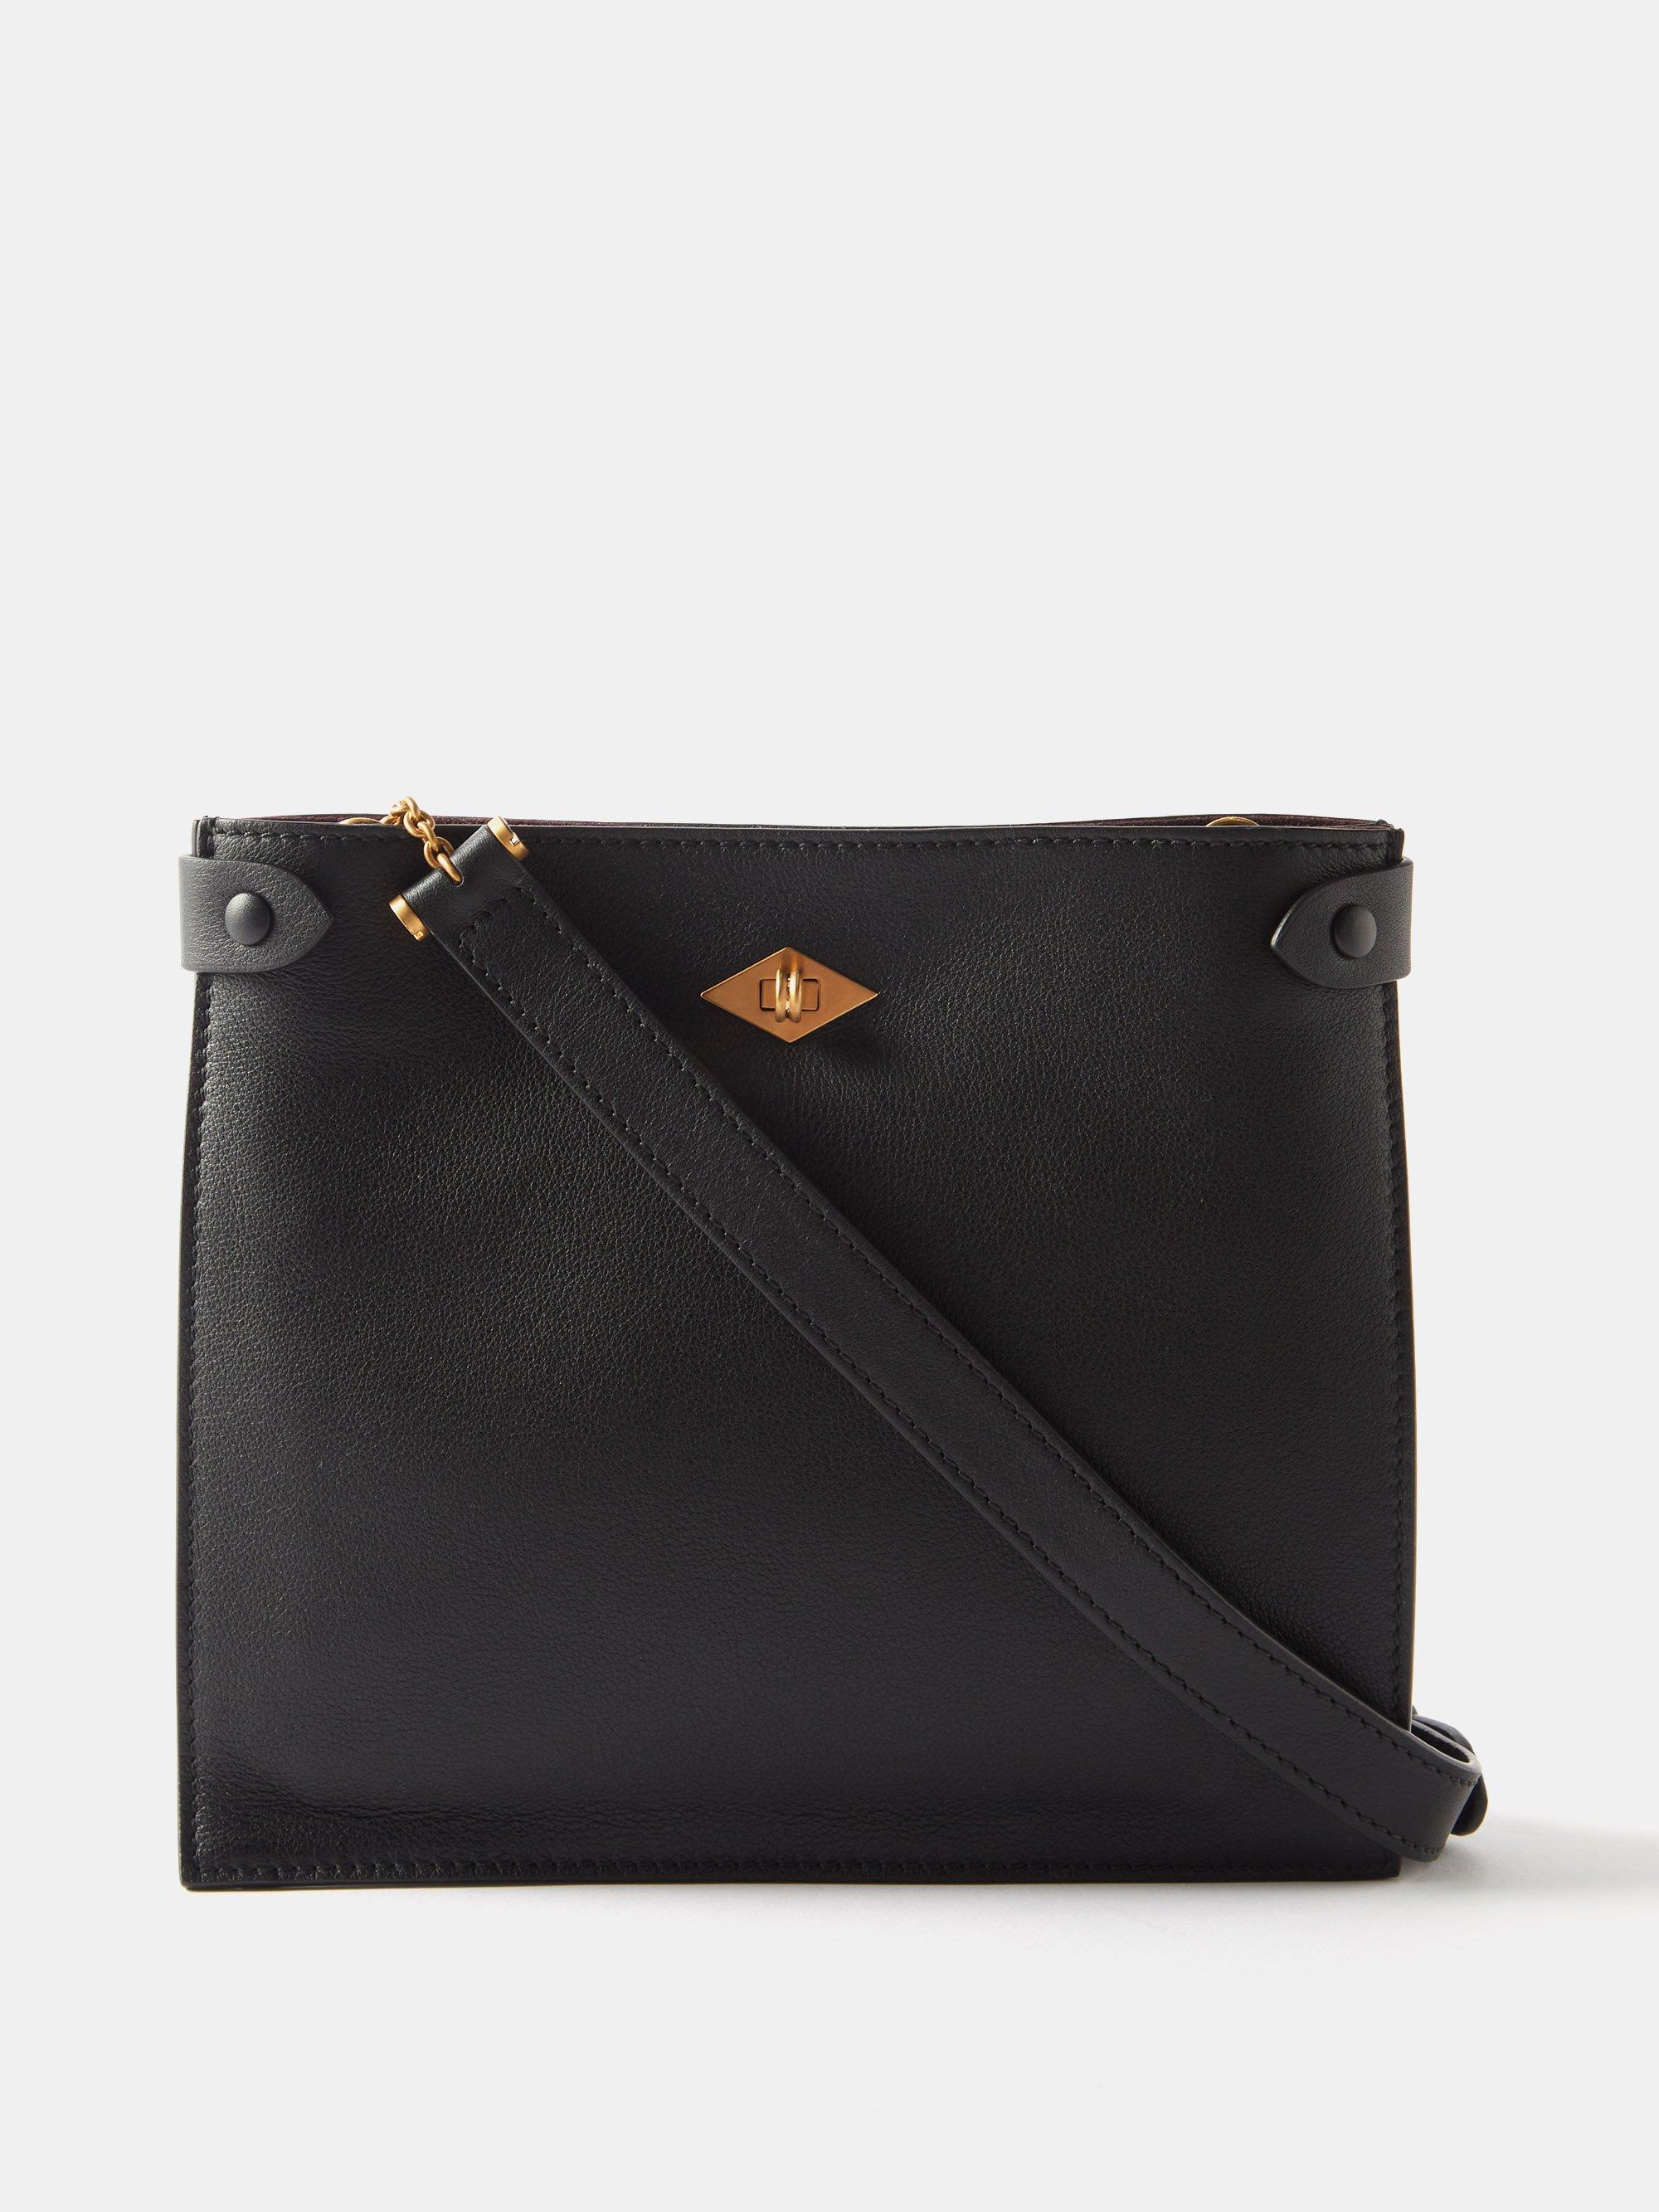 Metier Stowaway Leather Cross-body Bag in Black | Lyst